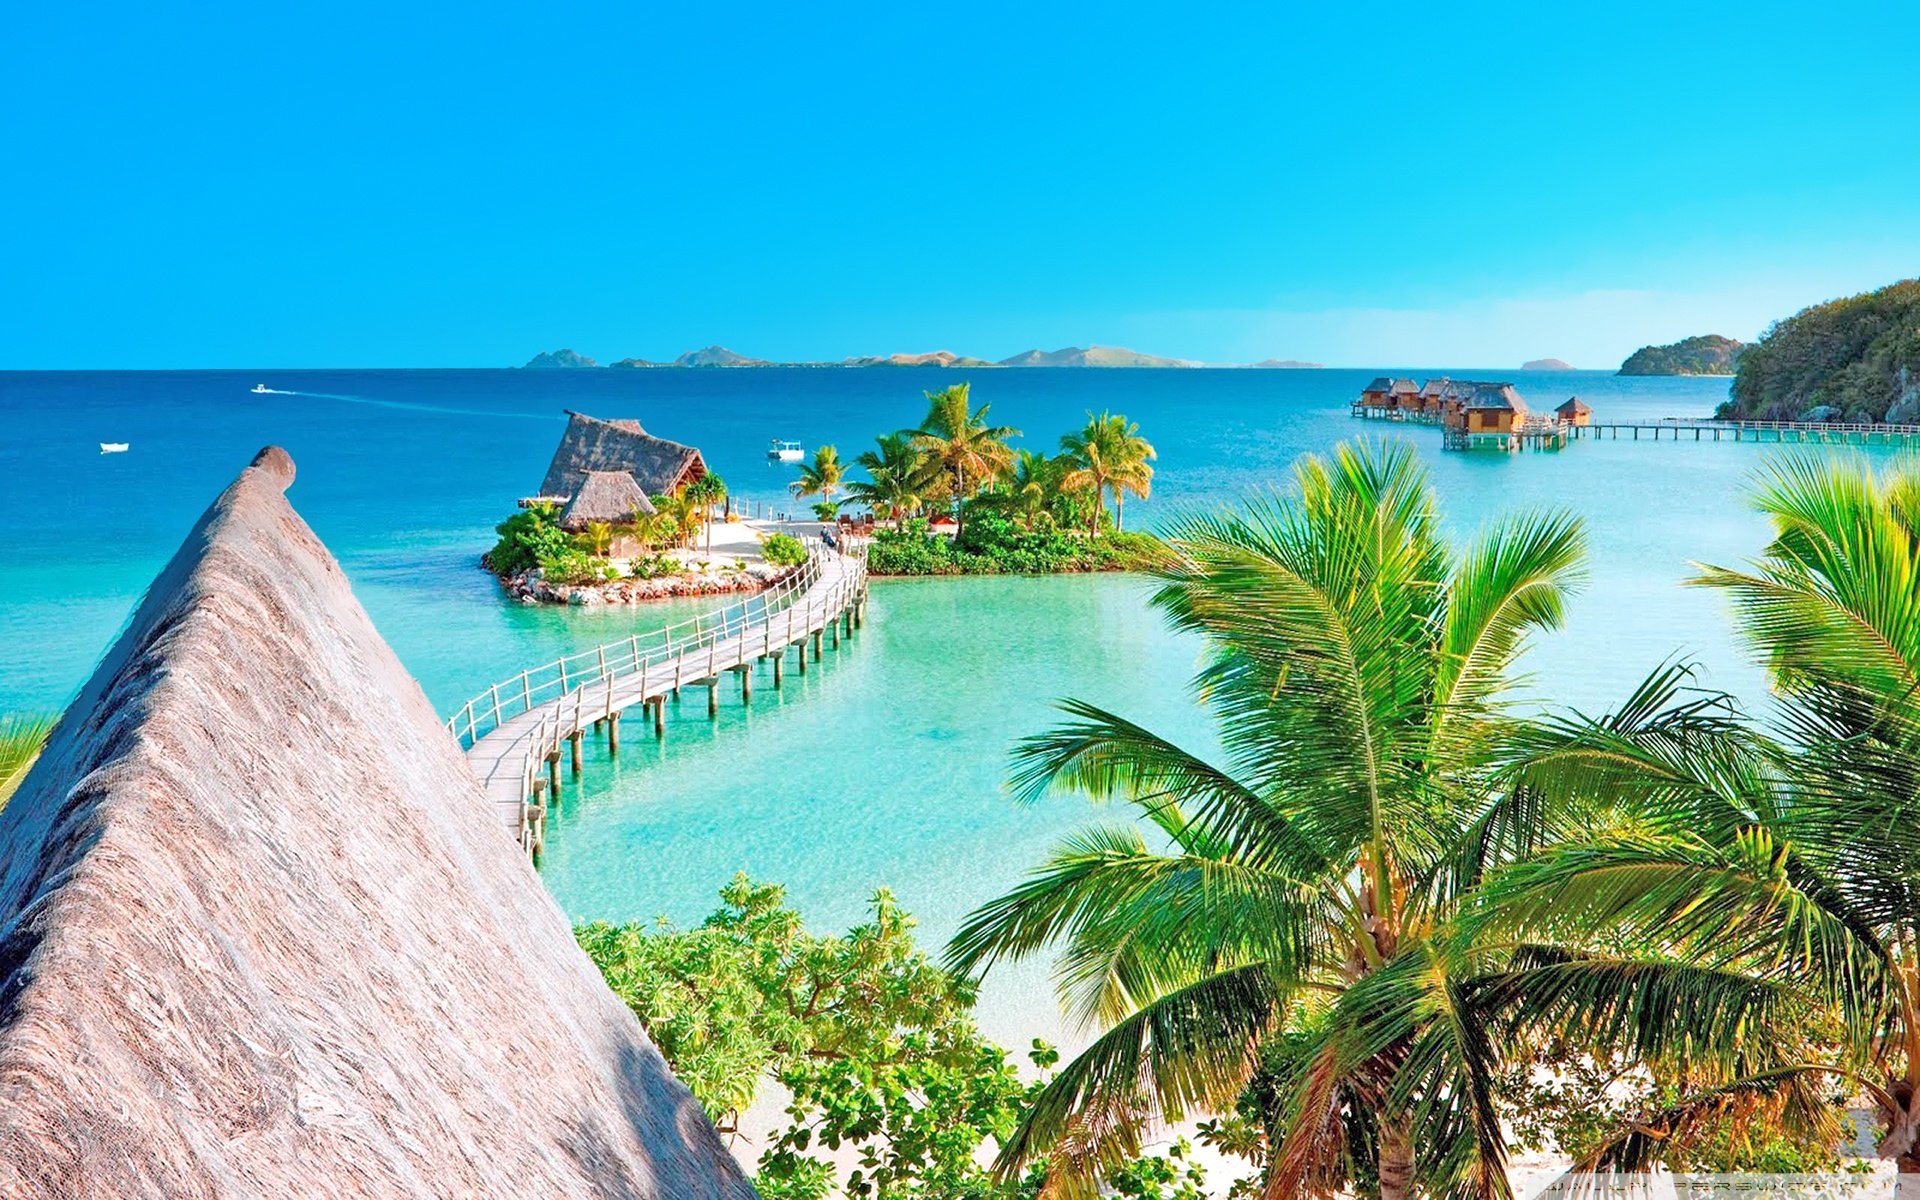 Tropical Resort Panorama ❤ 4K HD Desktop Wallpapers for 4K Ultra HD